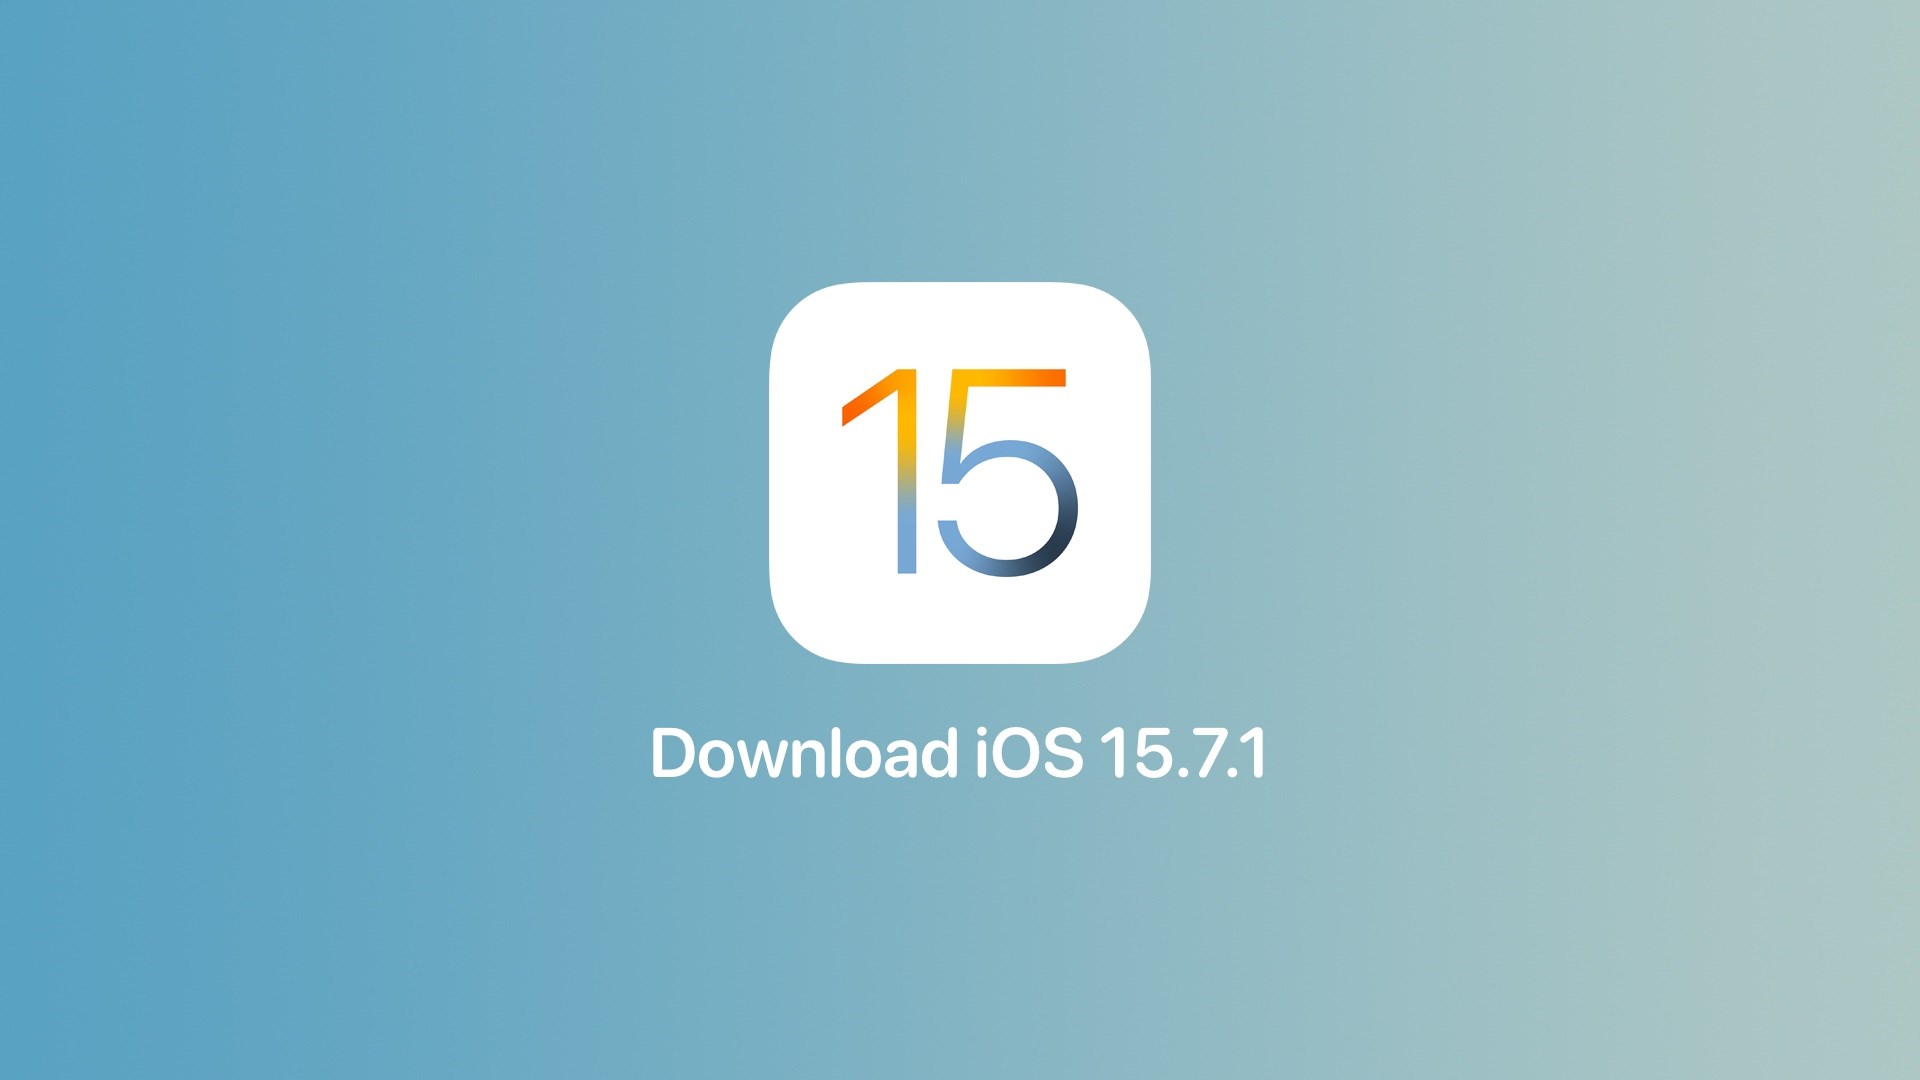 Acil yüklenmesi tavsiye edilen iOS 15.7.1 ve iPadOS 15.7.1 çıktı